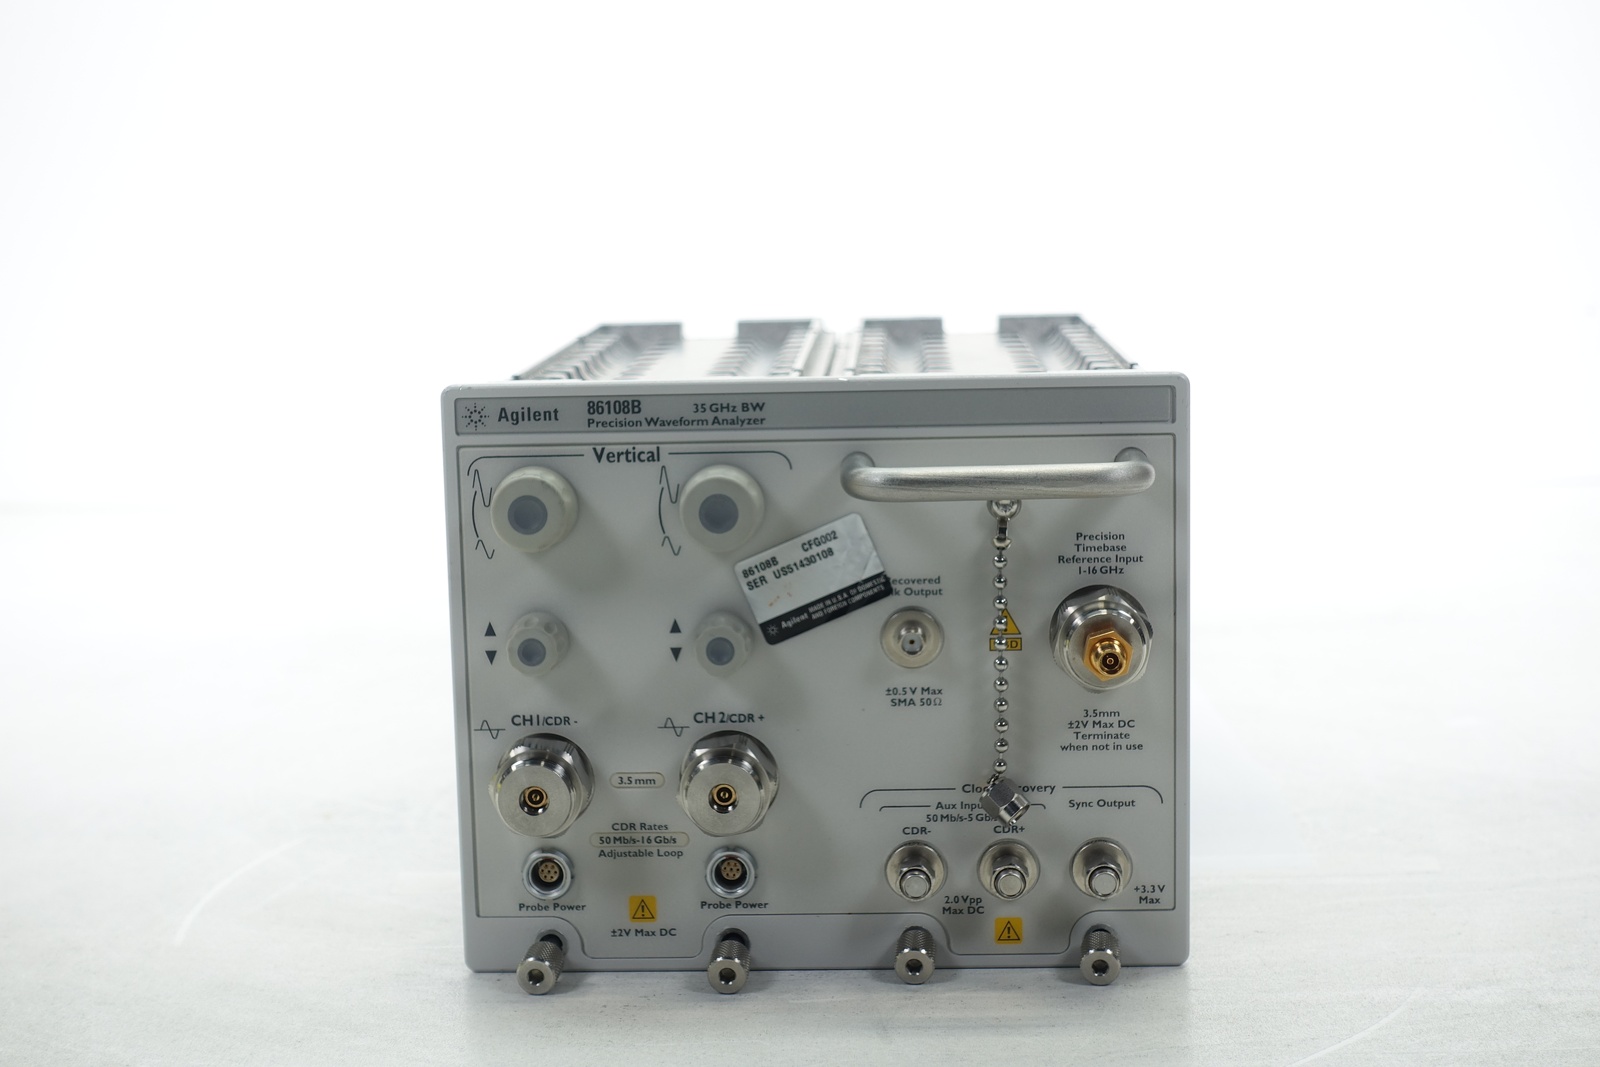 Keysight 86108B-LBW 35 GHz 